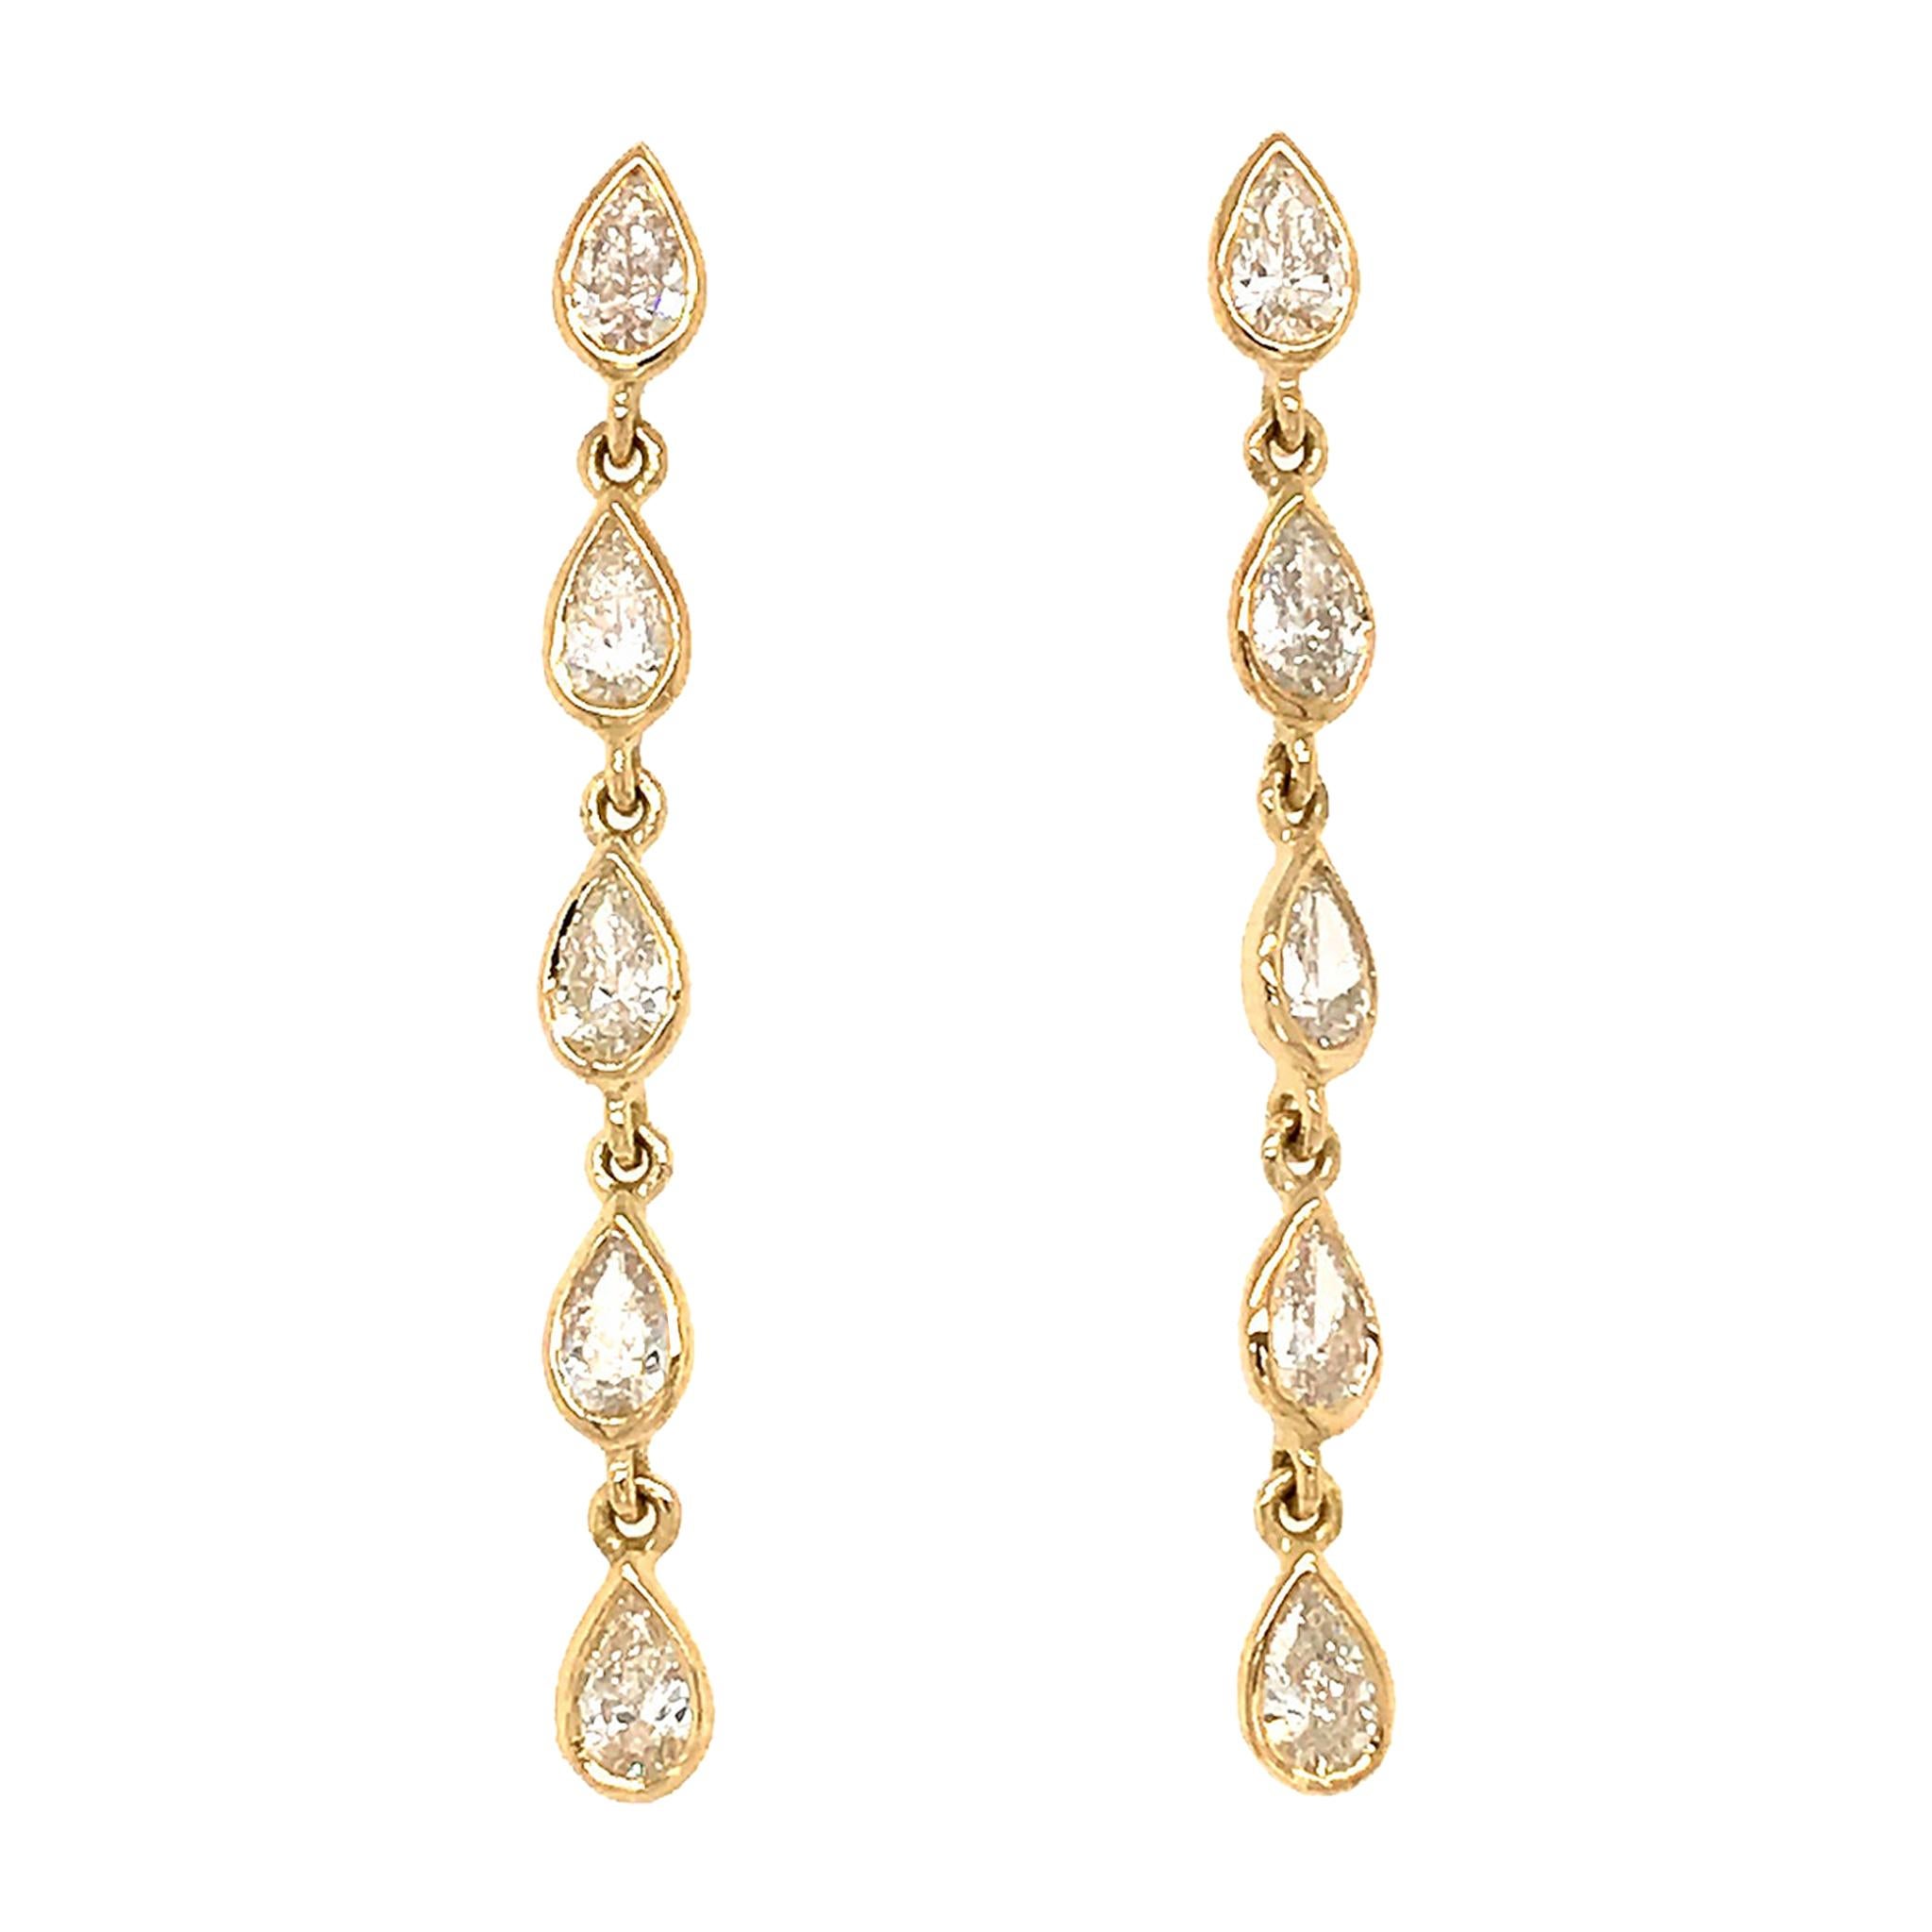 Fab Drops 18 Karat Yellow Gold Pear Shaped Drop Earrings